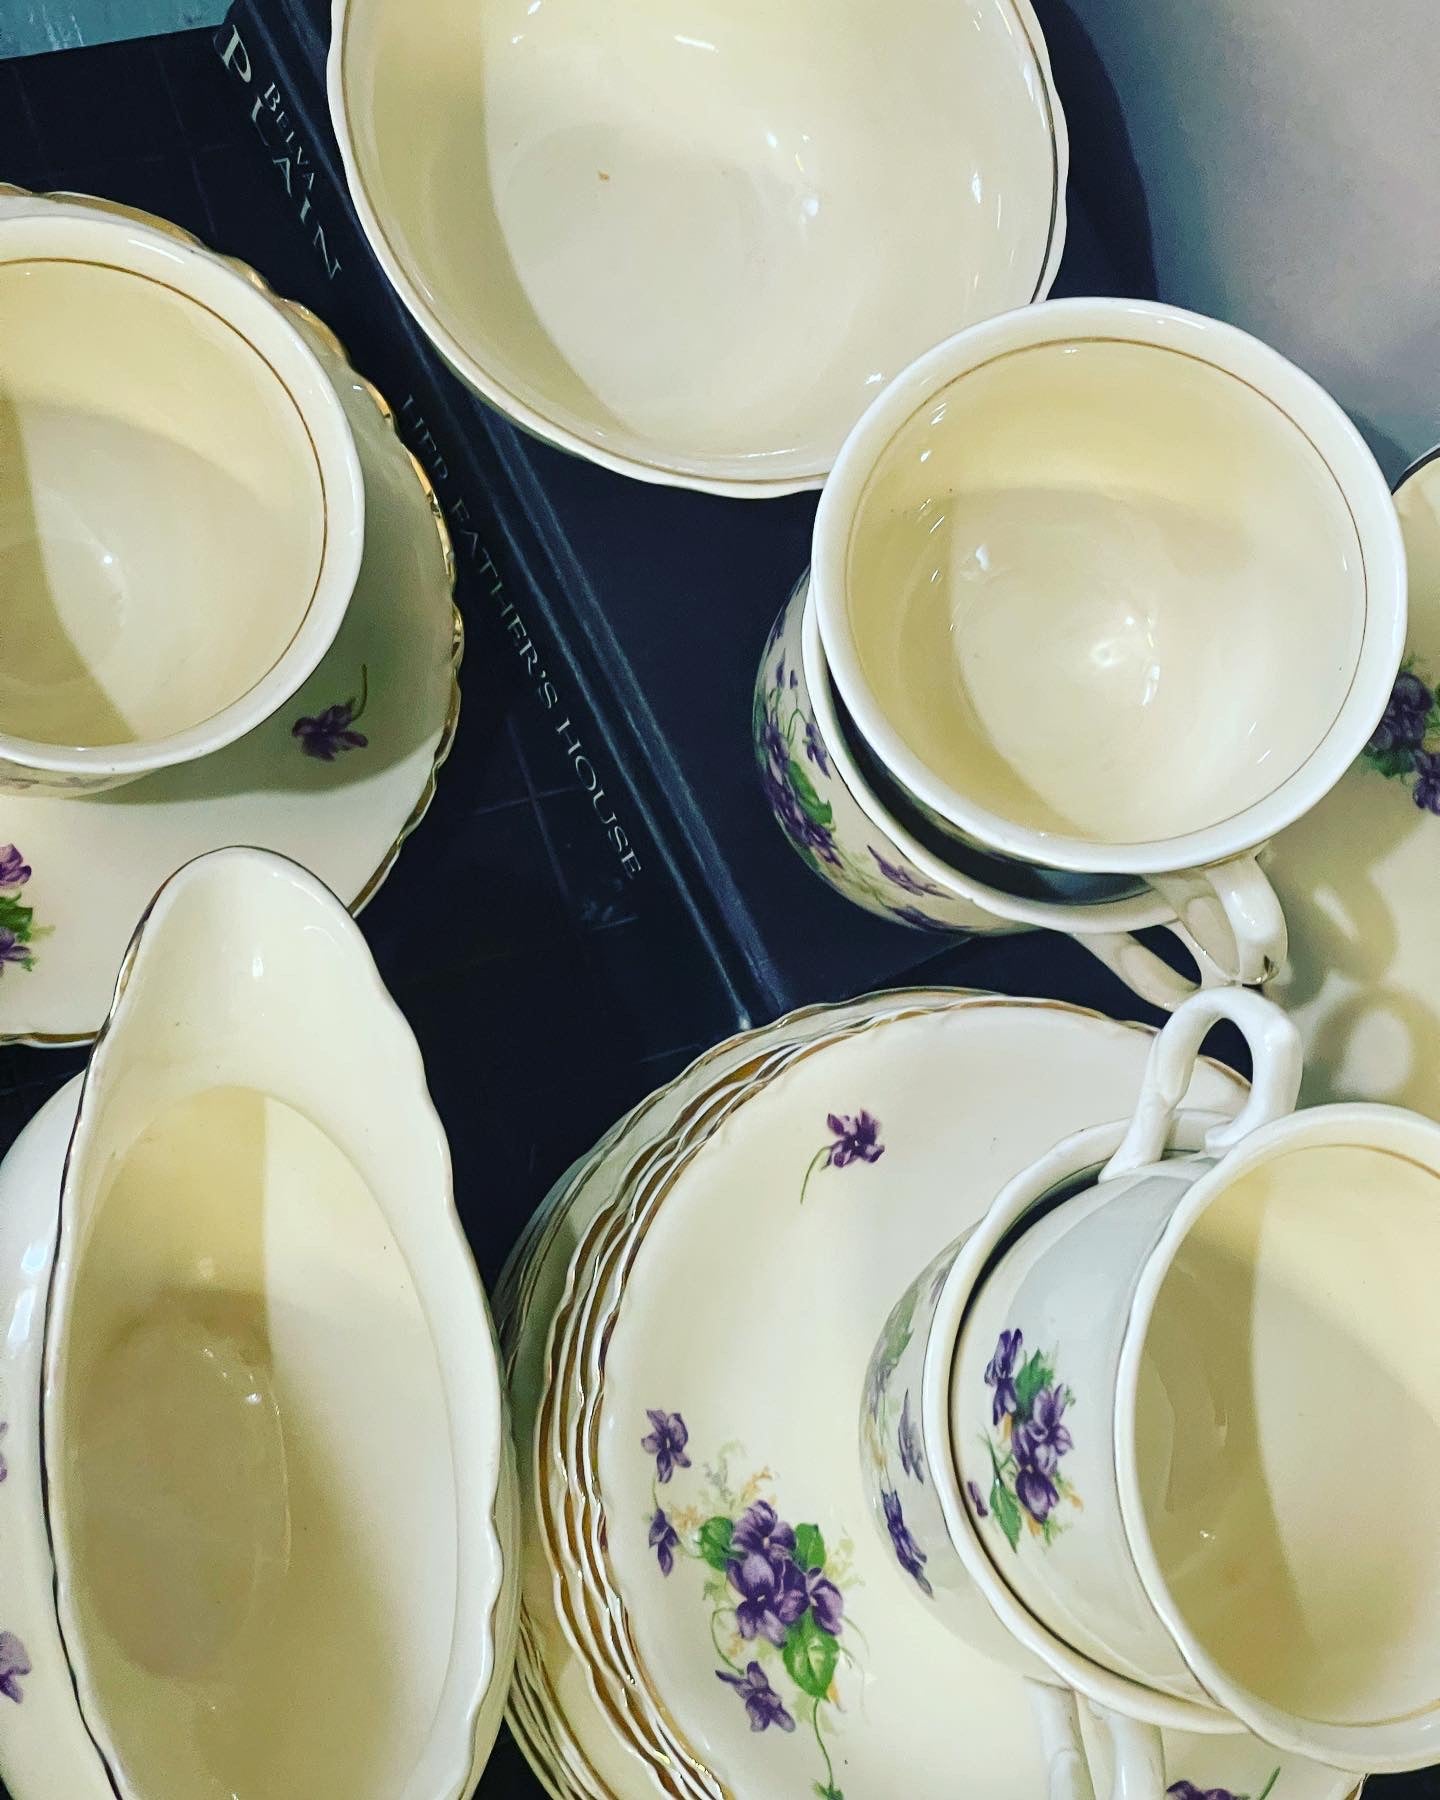 Set of four vintage teacups with violets